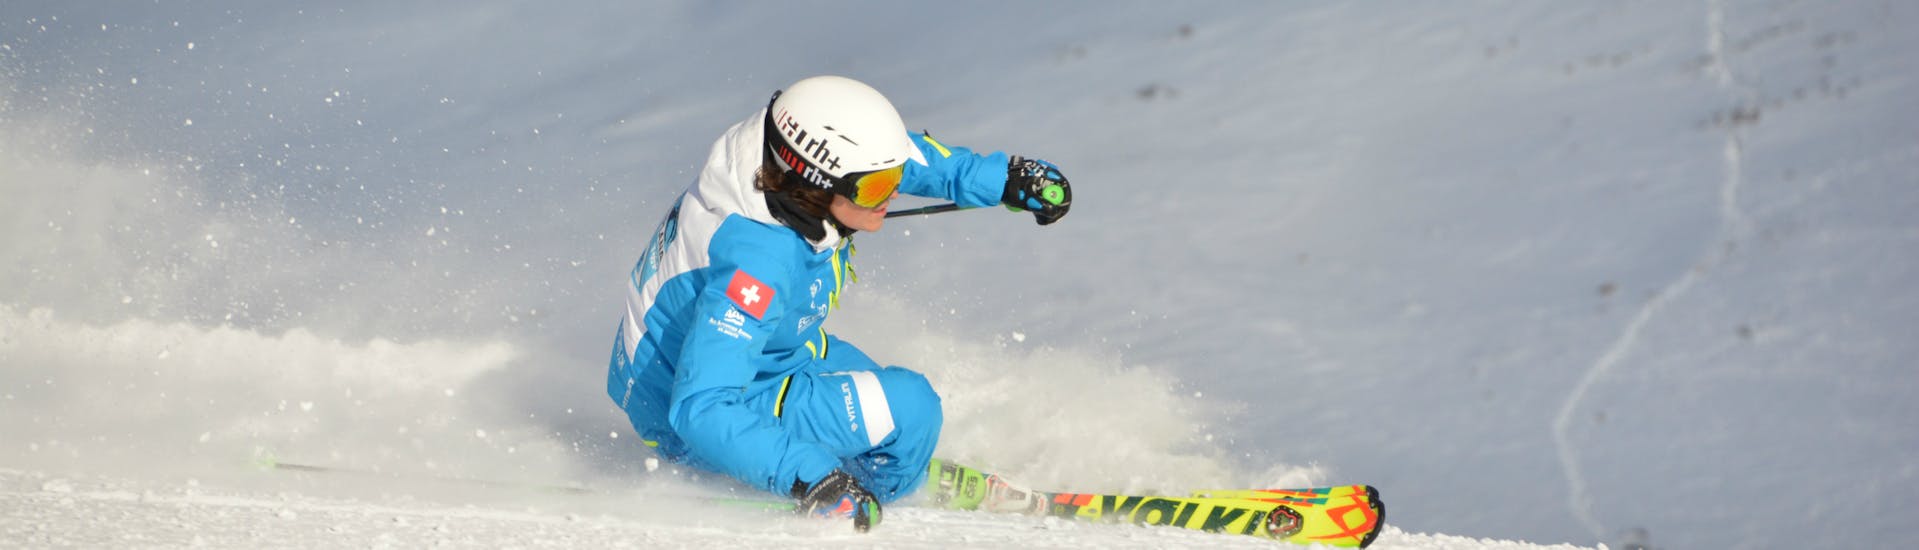 Un skieur dévale la pente pendant les cours particuliers de ski pour Adultes de l'école de ski Silvaplana Top Snowsports.